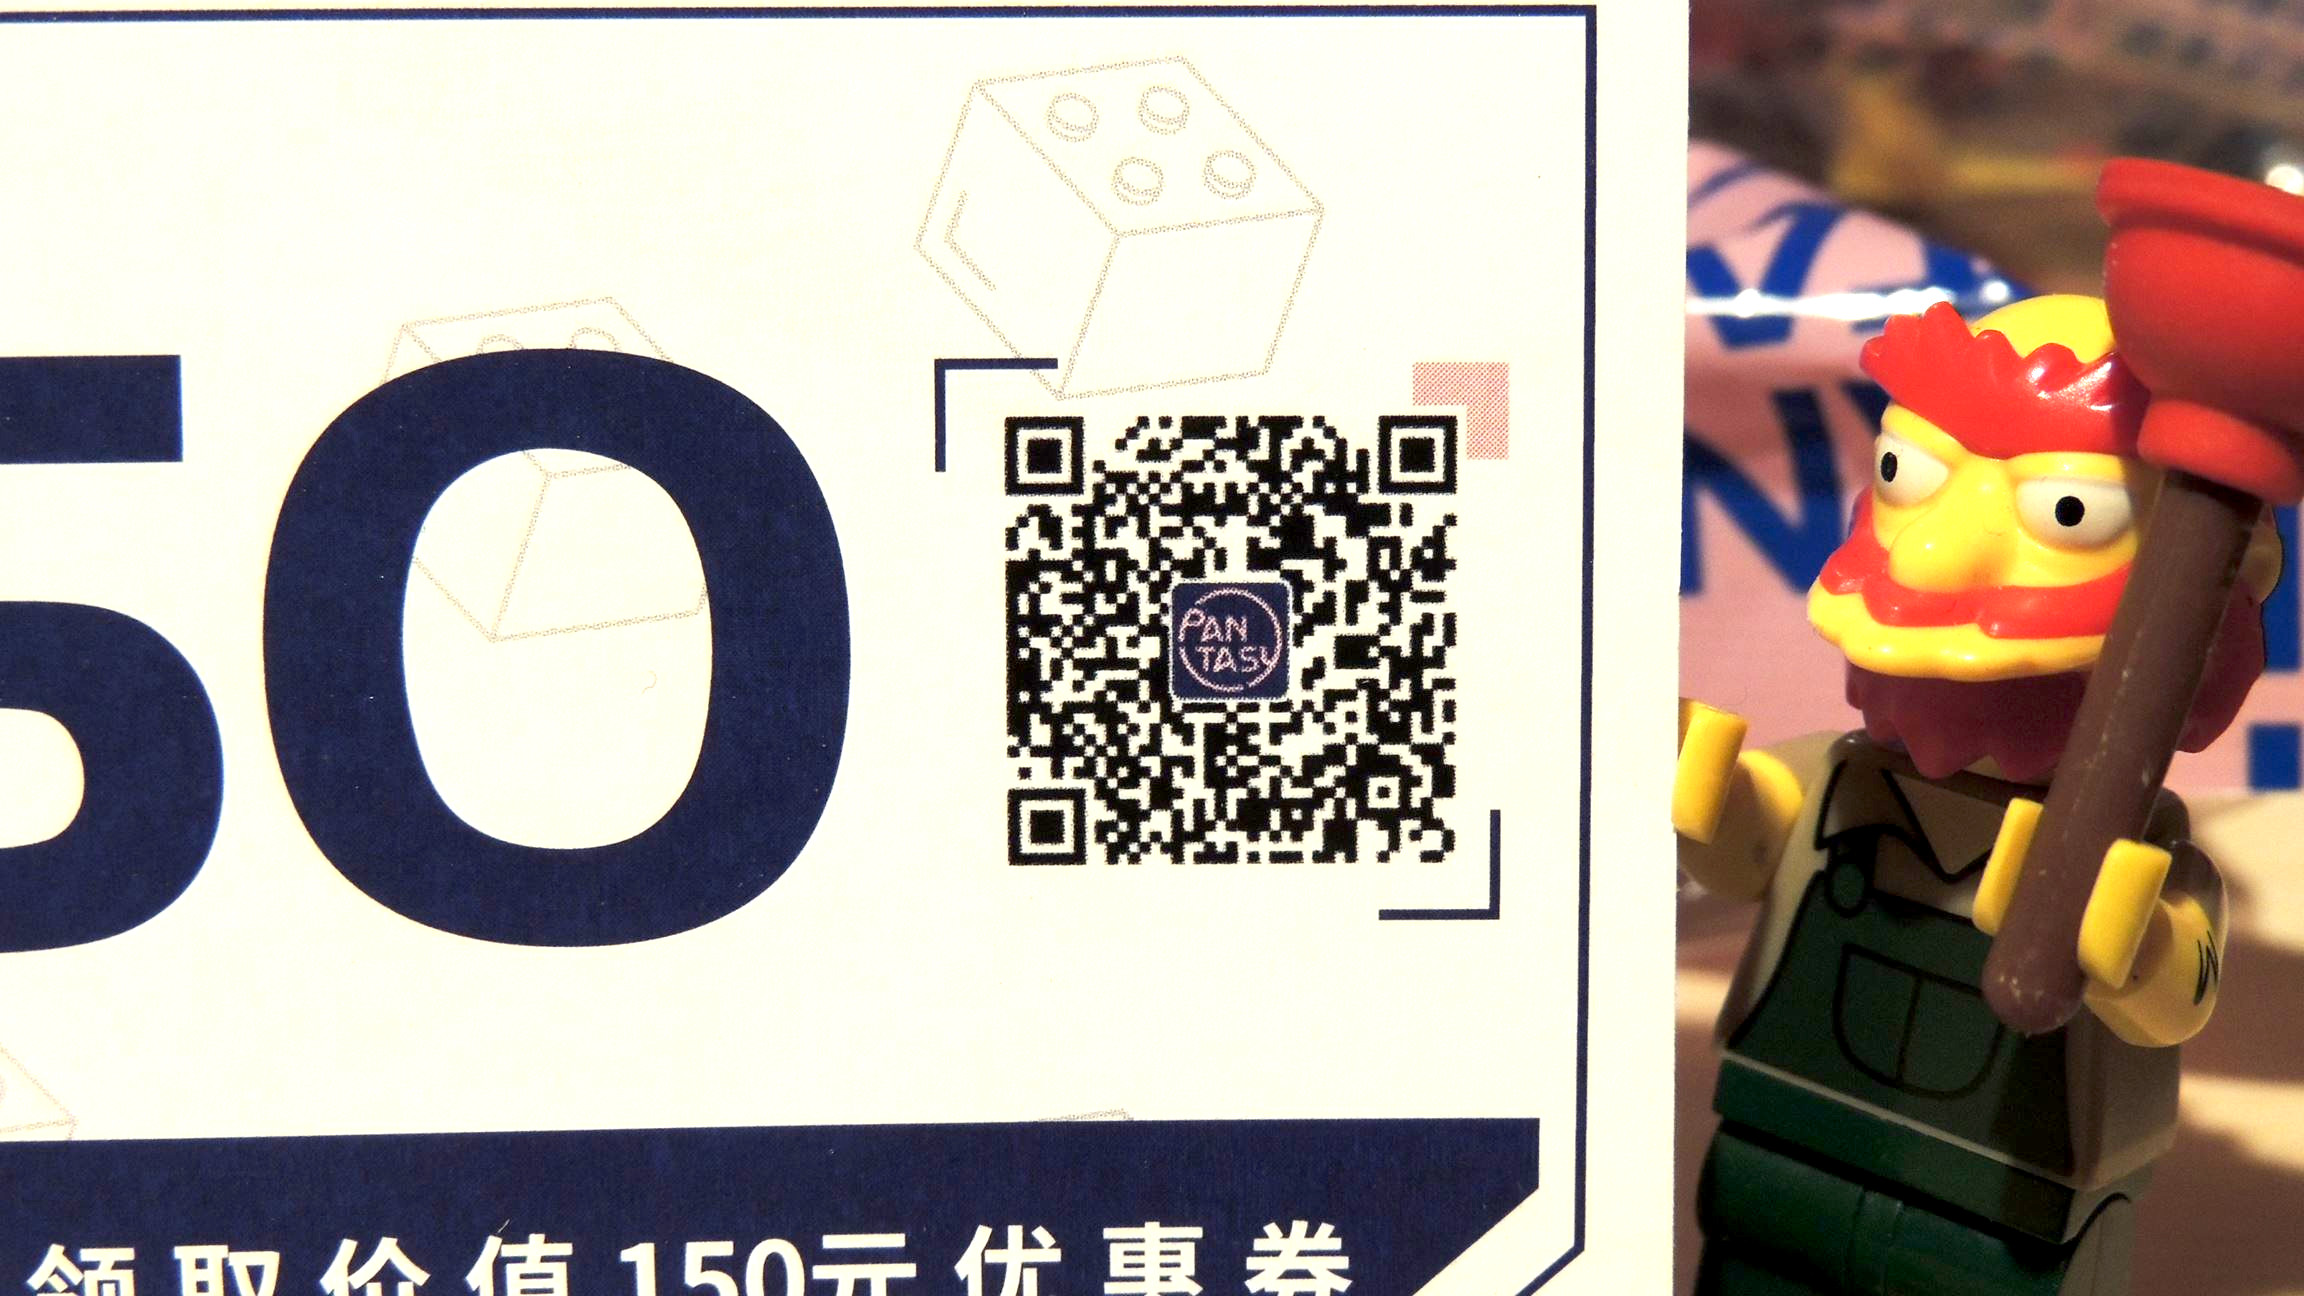 21,- € könnt ihr euch in China via WeChat im Kauf sparen mit dem Code.